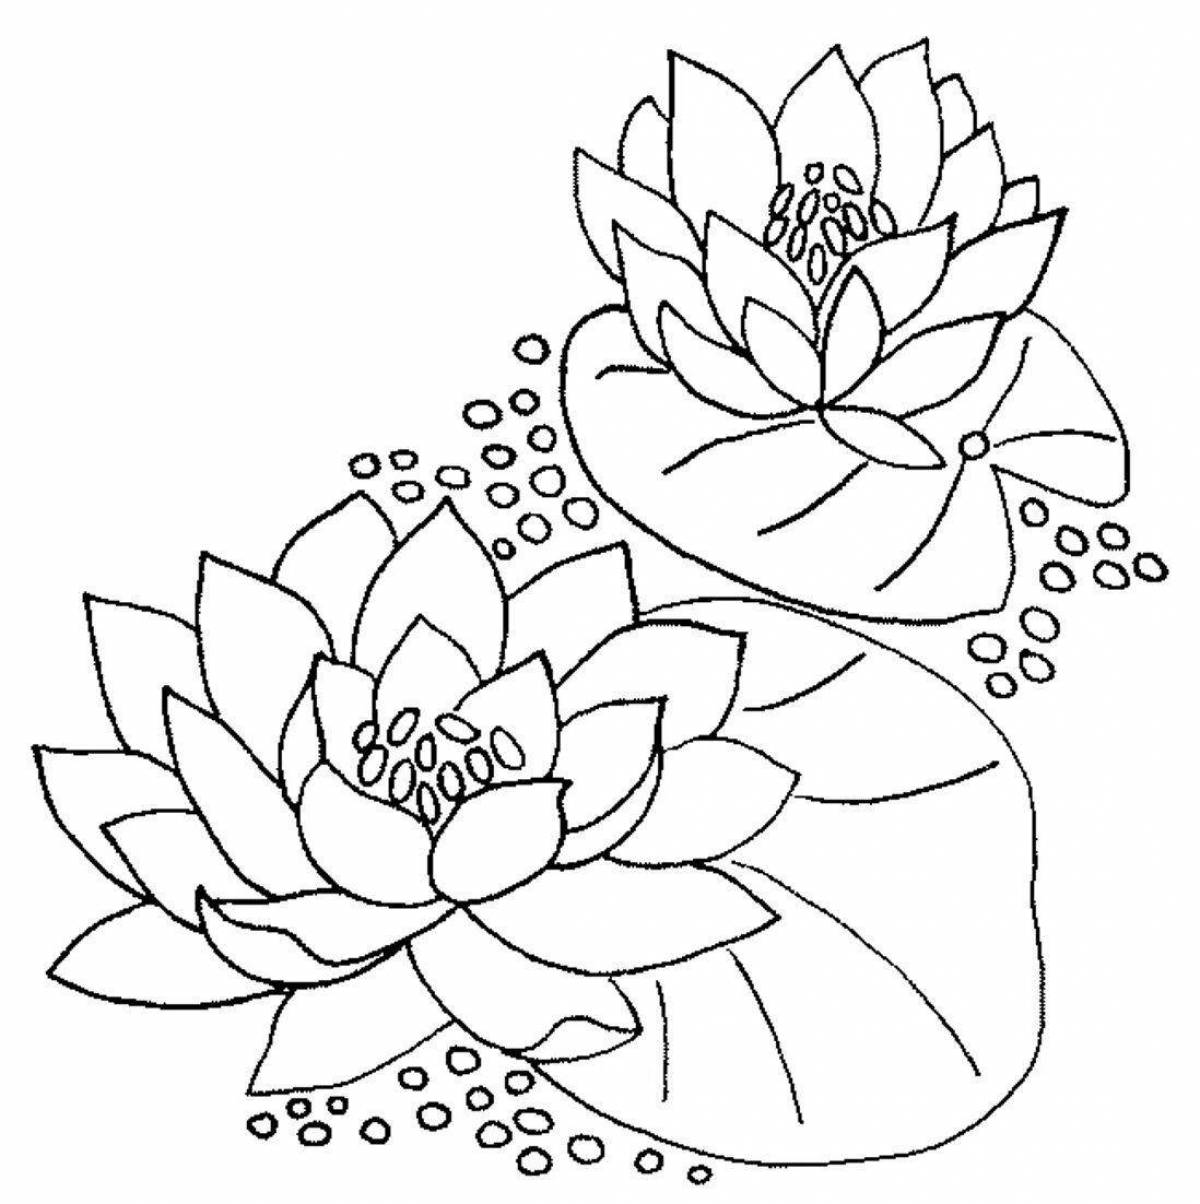 Exquisite coloring lotus flower